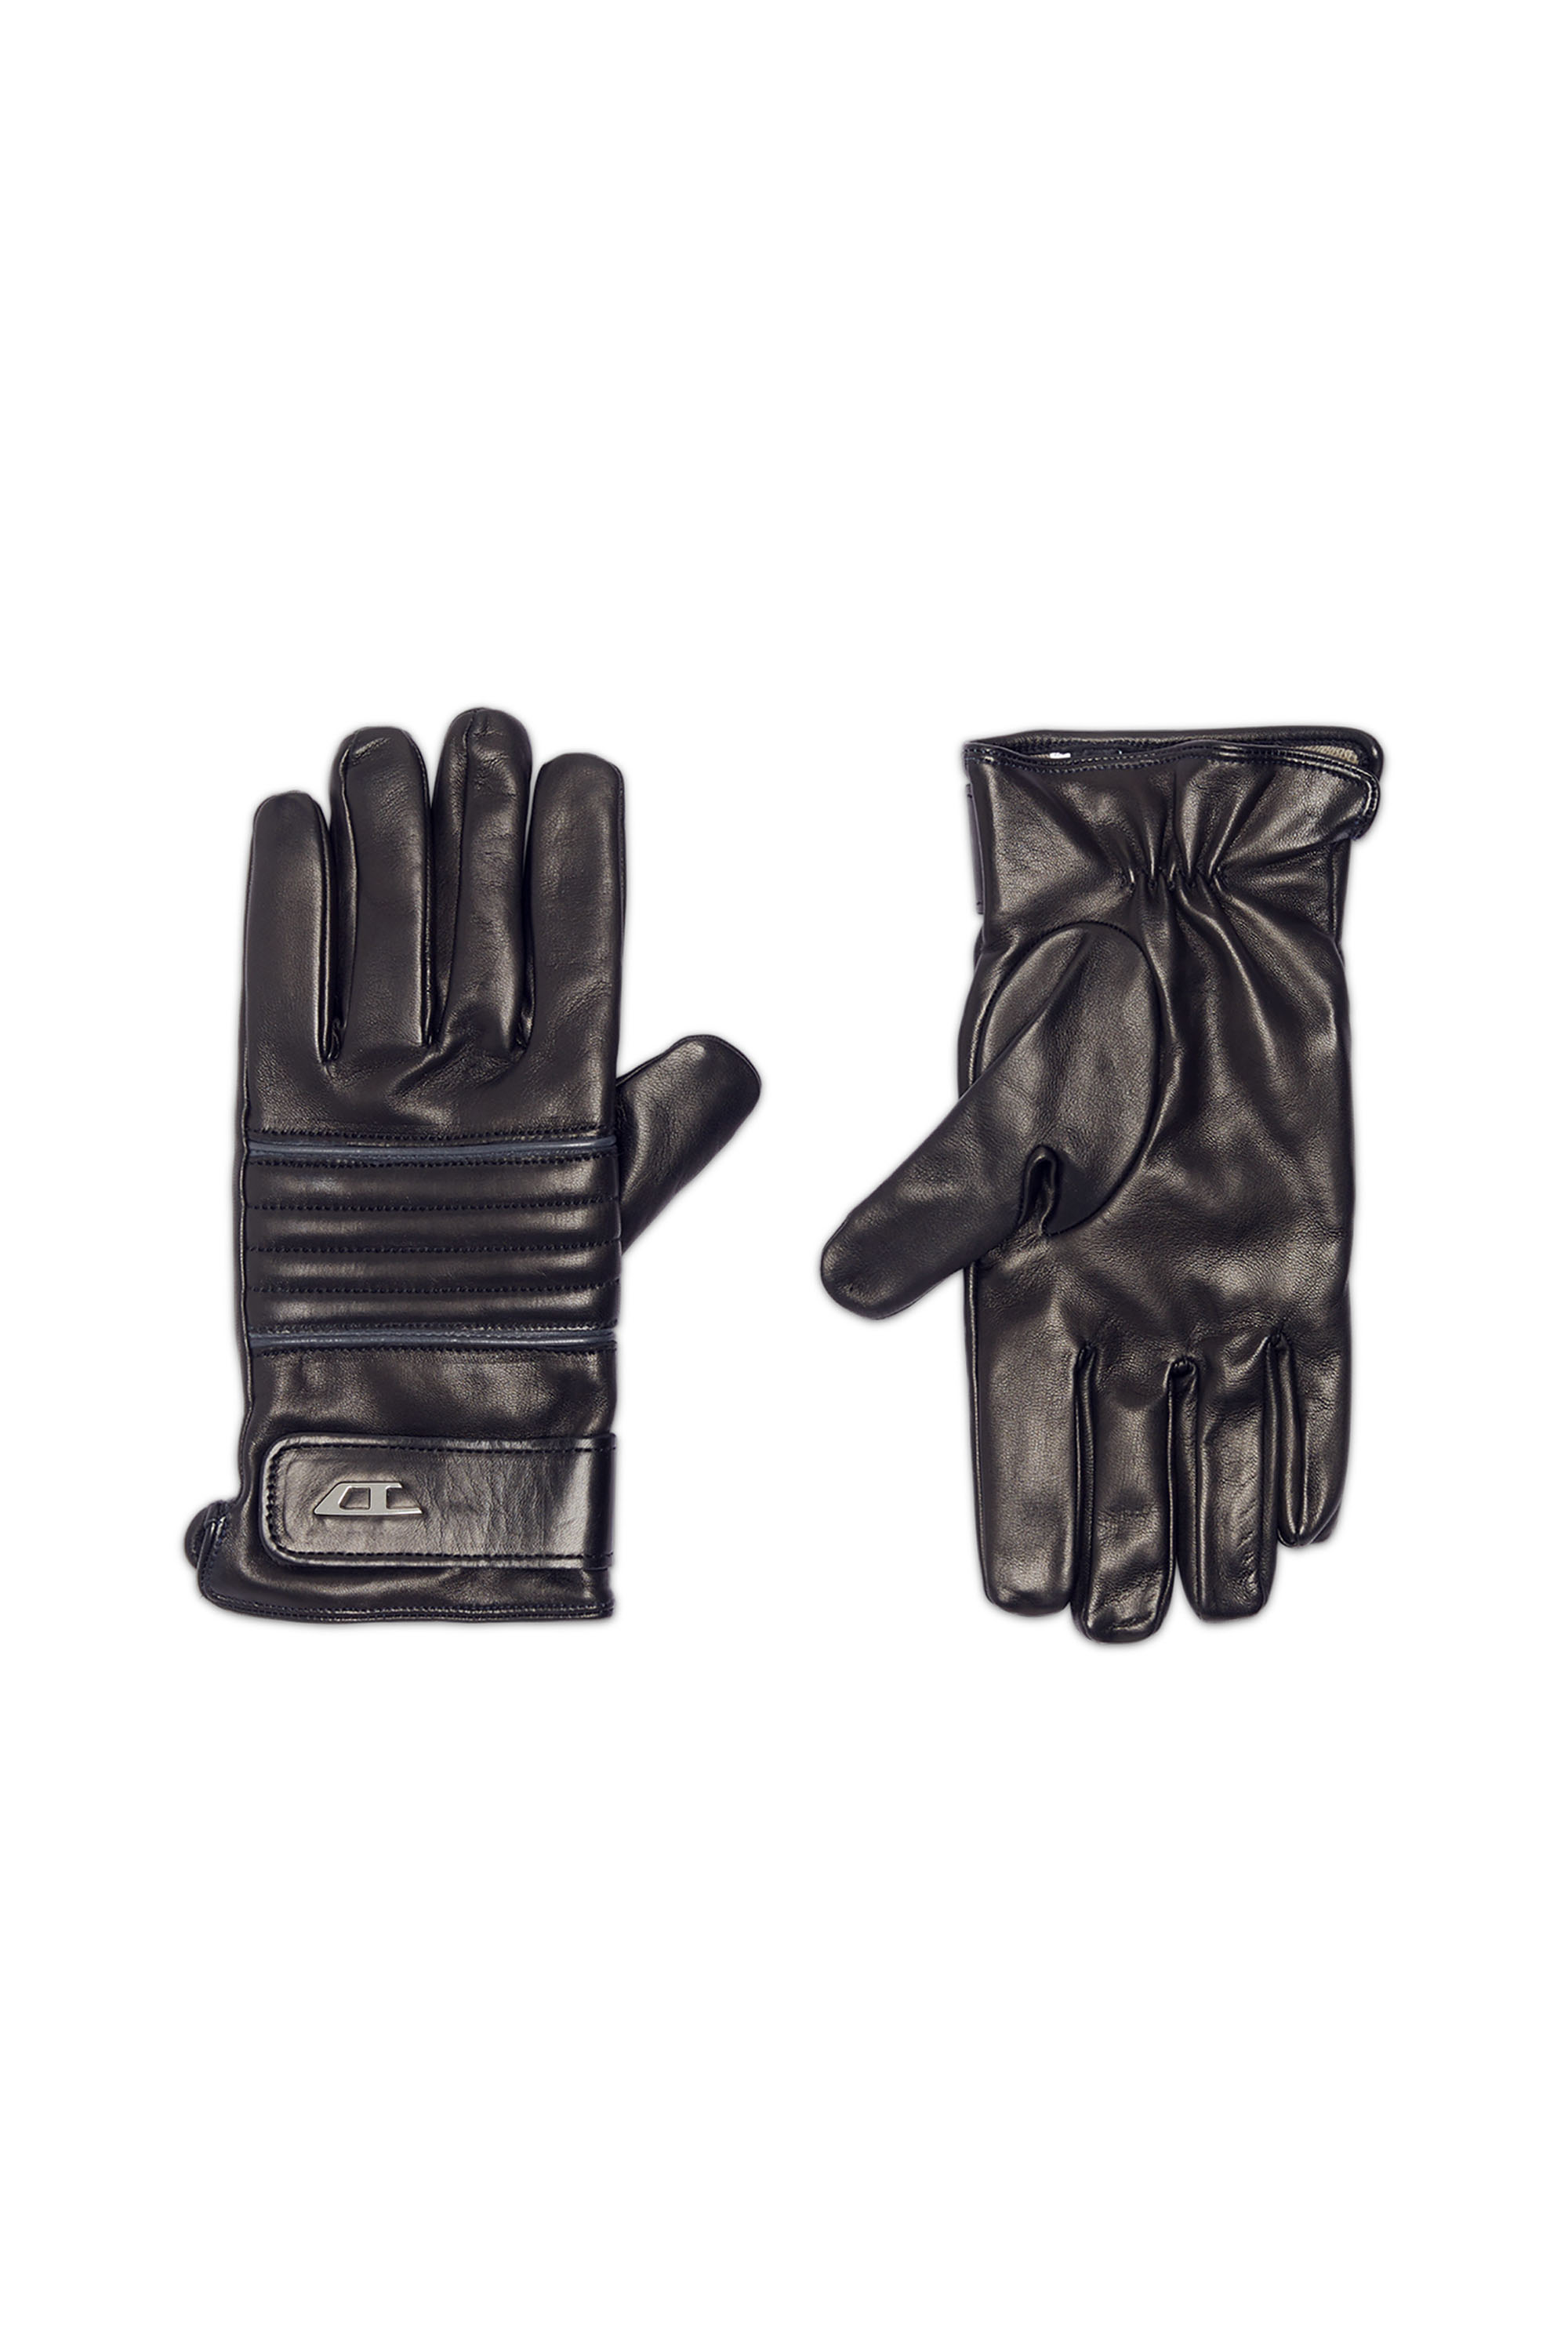 G-CEDRIC, Black - Gloves